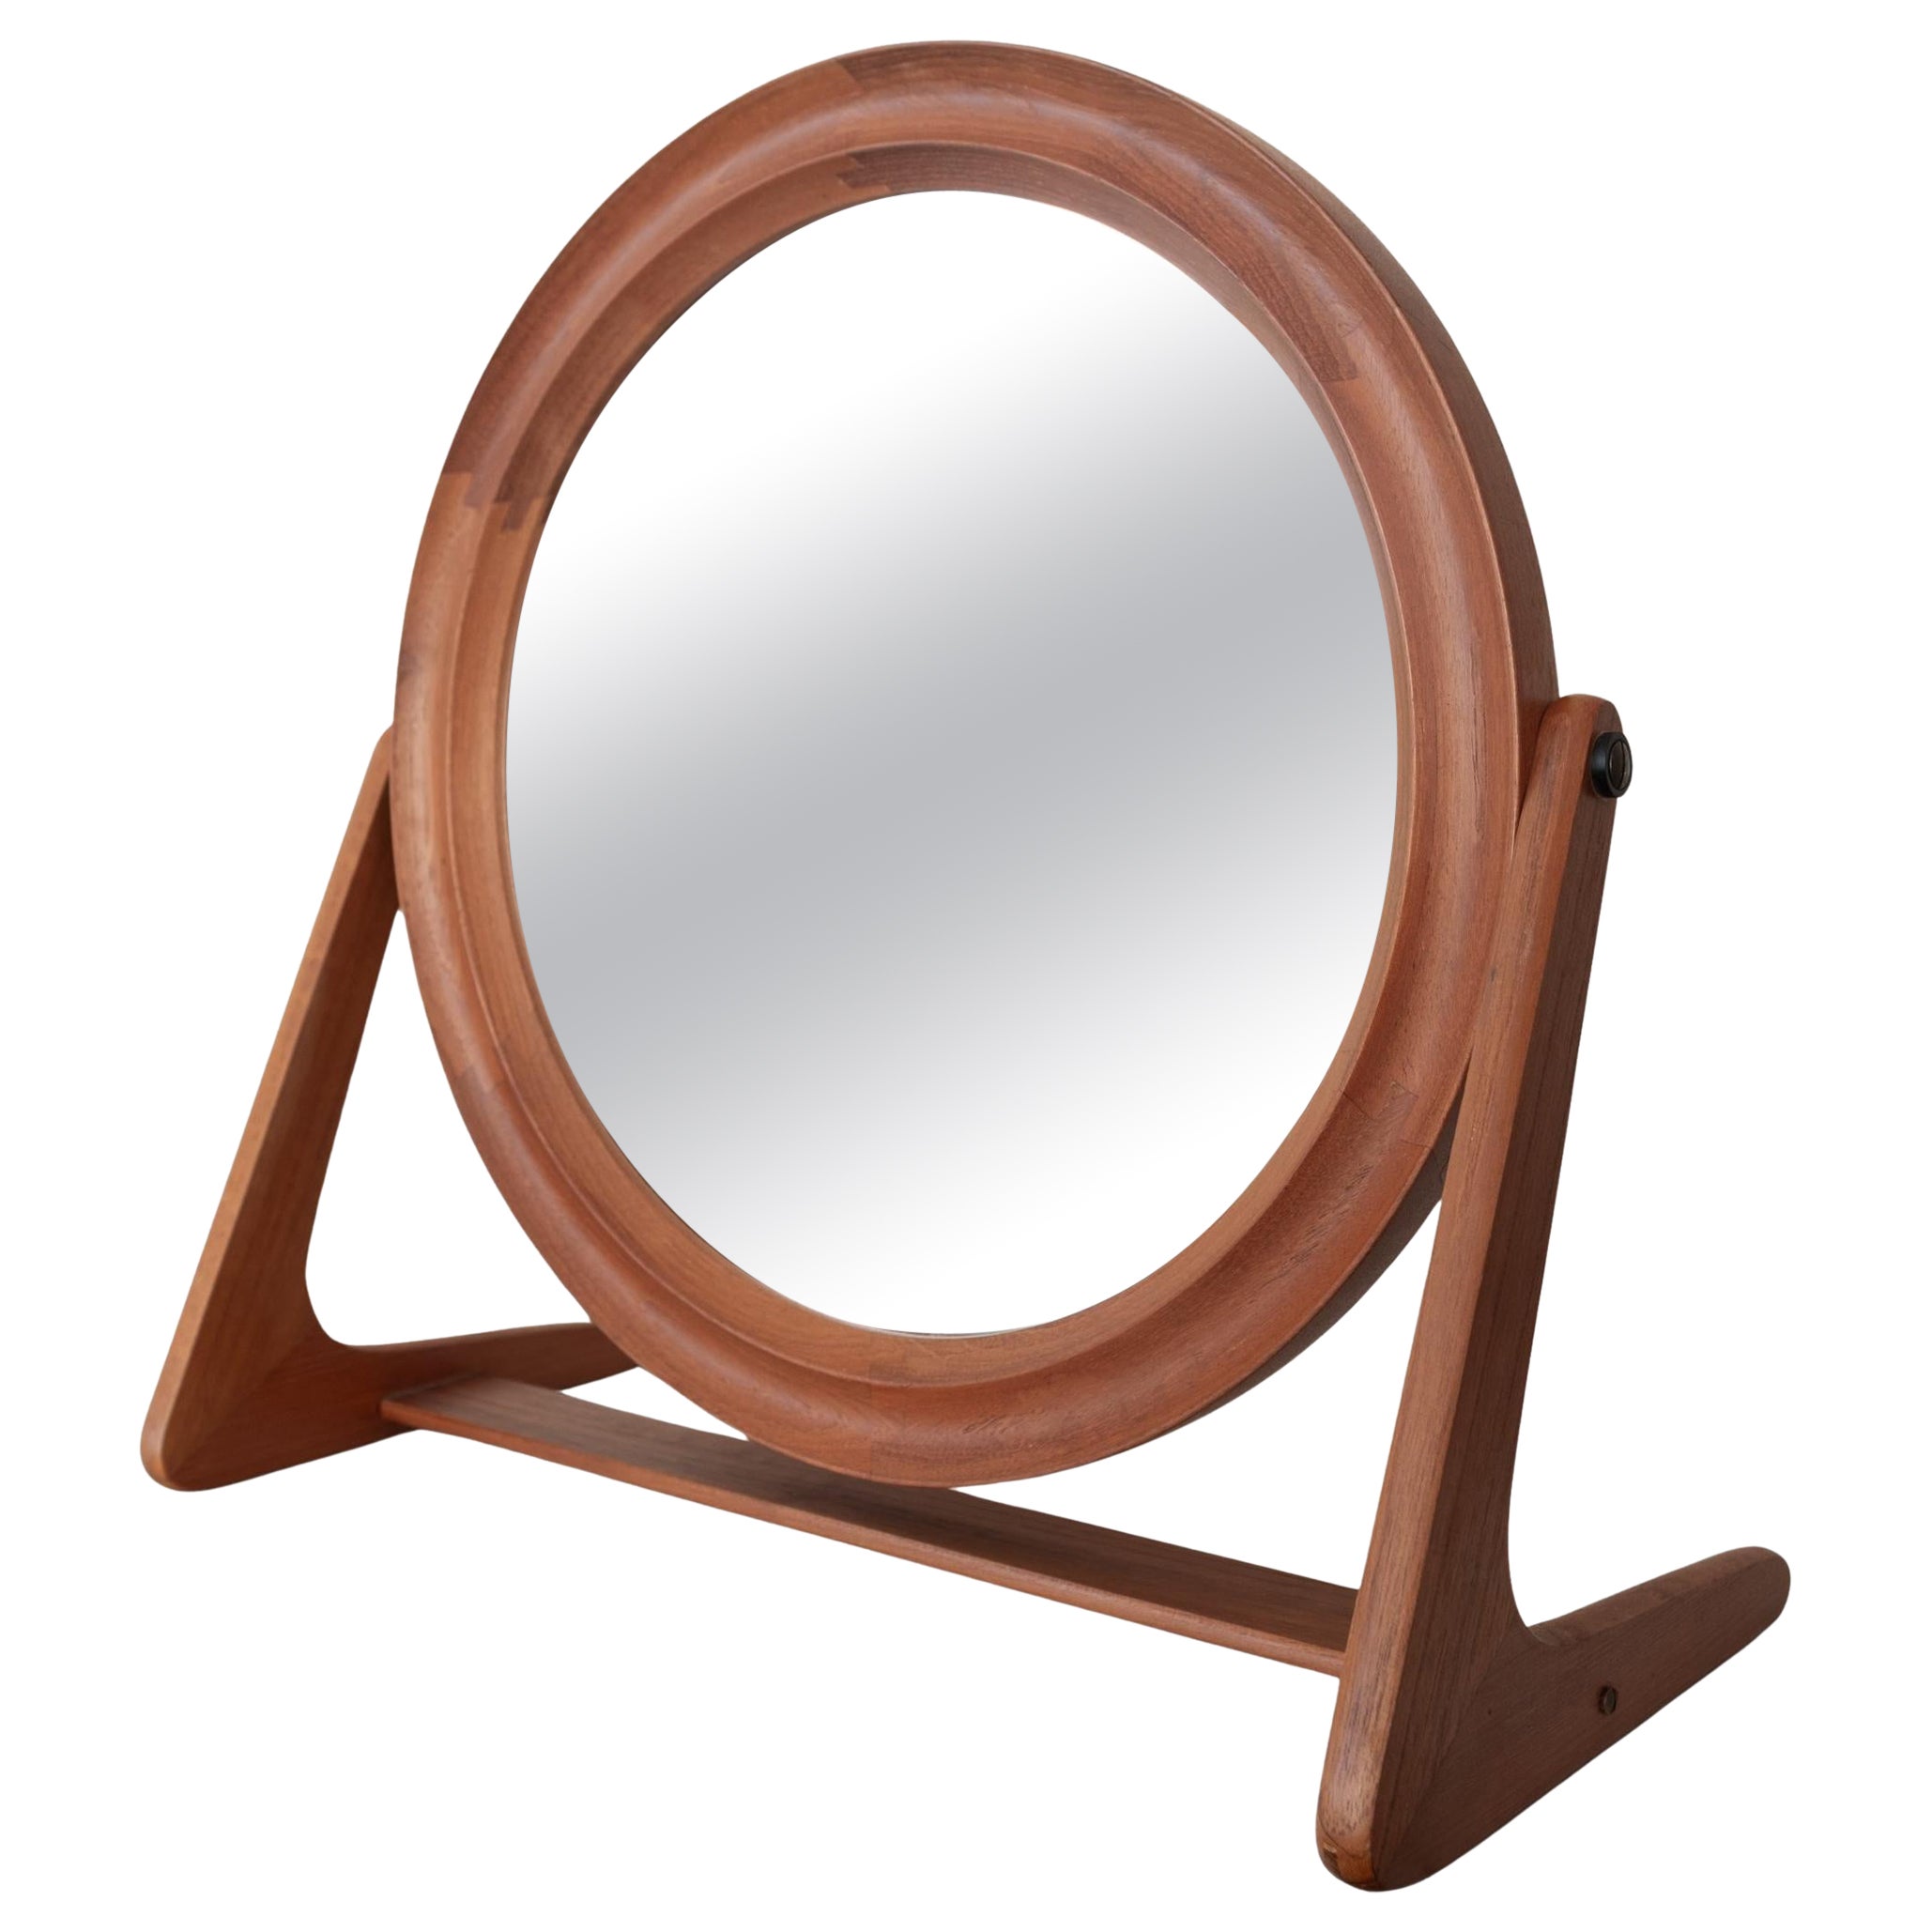 Pedersen and Hansen Danish Modern Teak Vanity or Table Top Adjustable Mirror For Sale